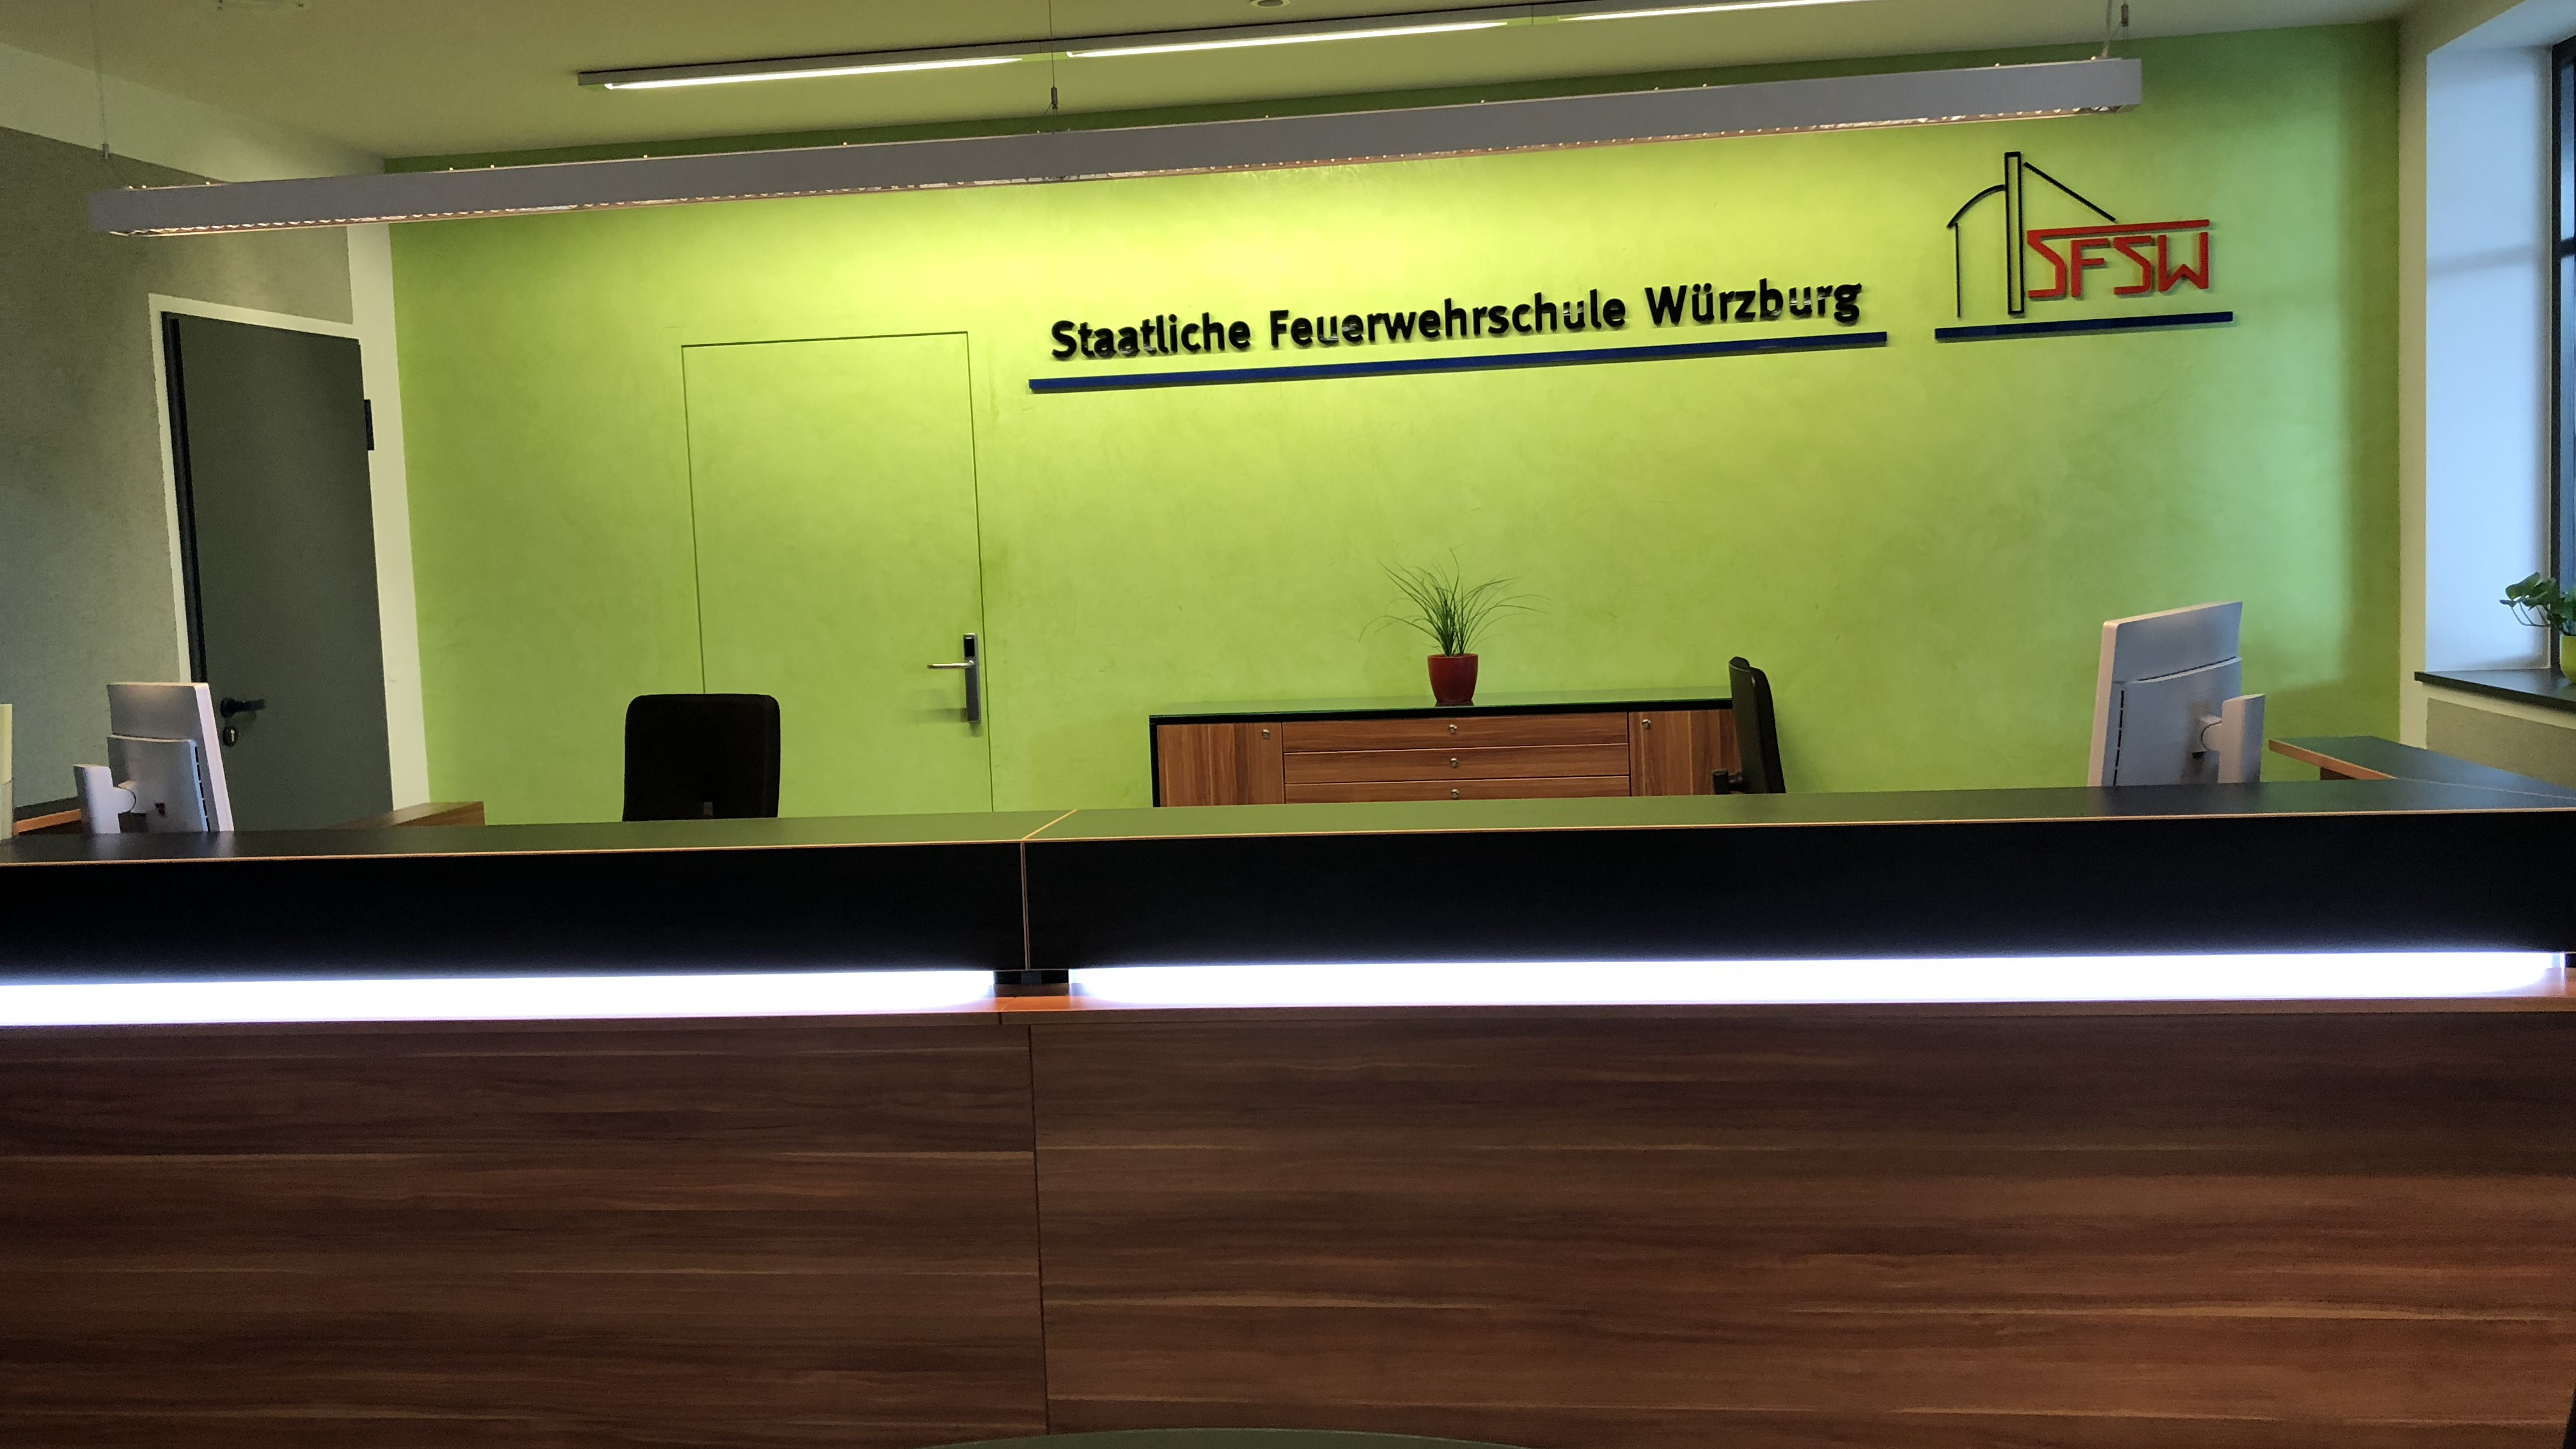  Besichtigung der staatlichen Feuerwehrschule Würzburg 2018 